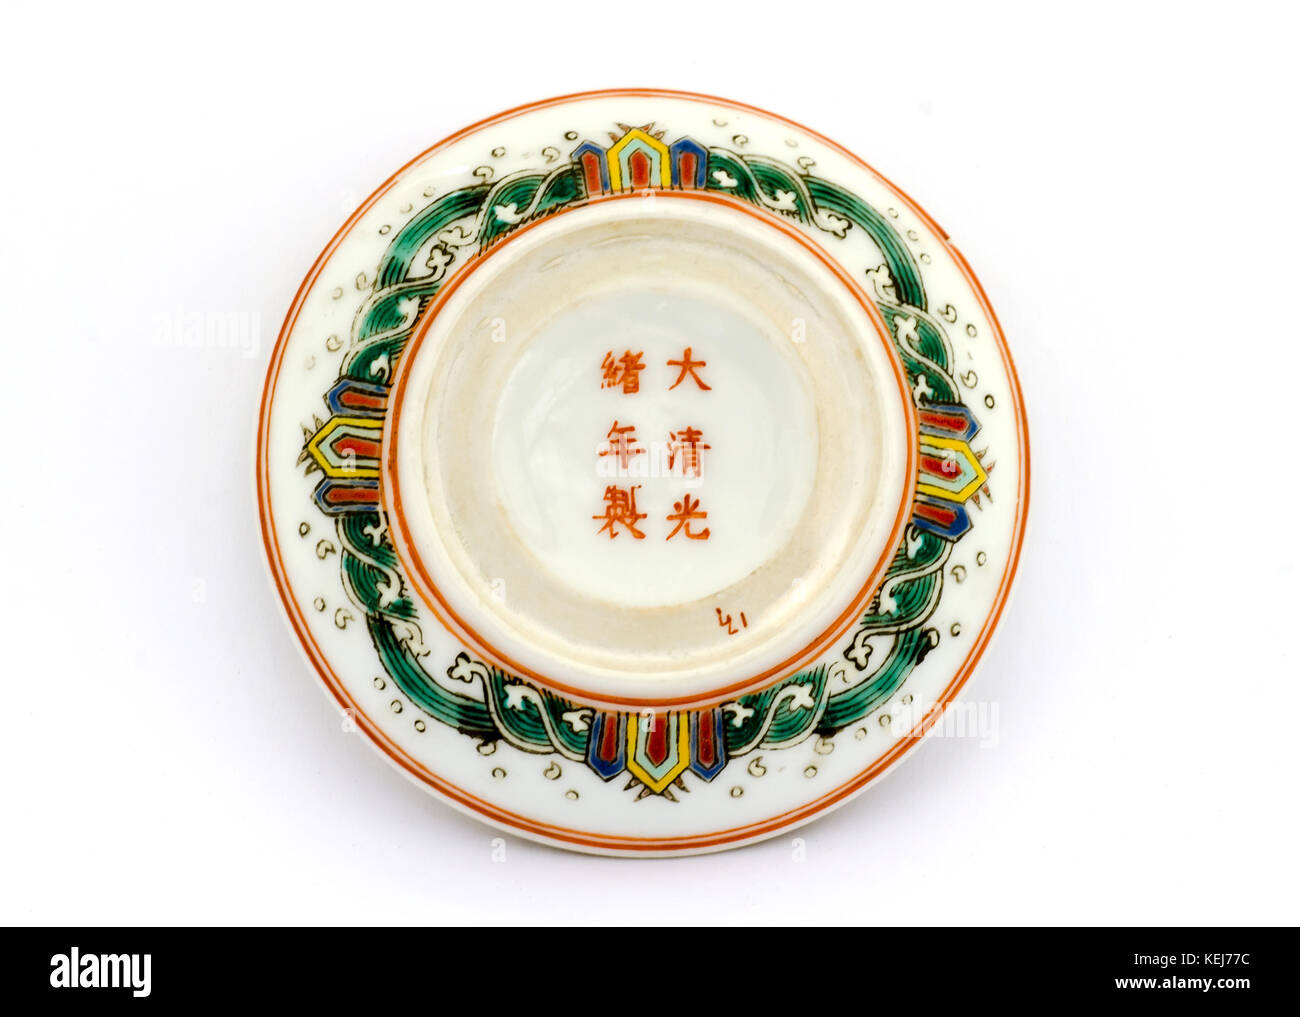 Les caractères chinois sur la base d'un petit plat de céramique à couvercle  Photo Stock - Alamy